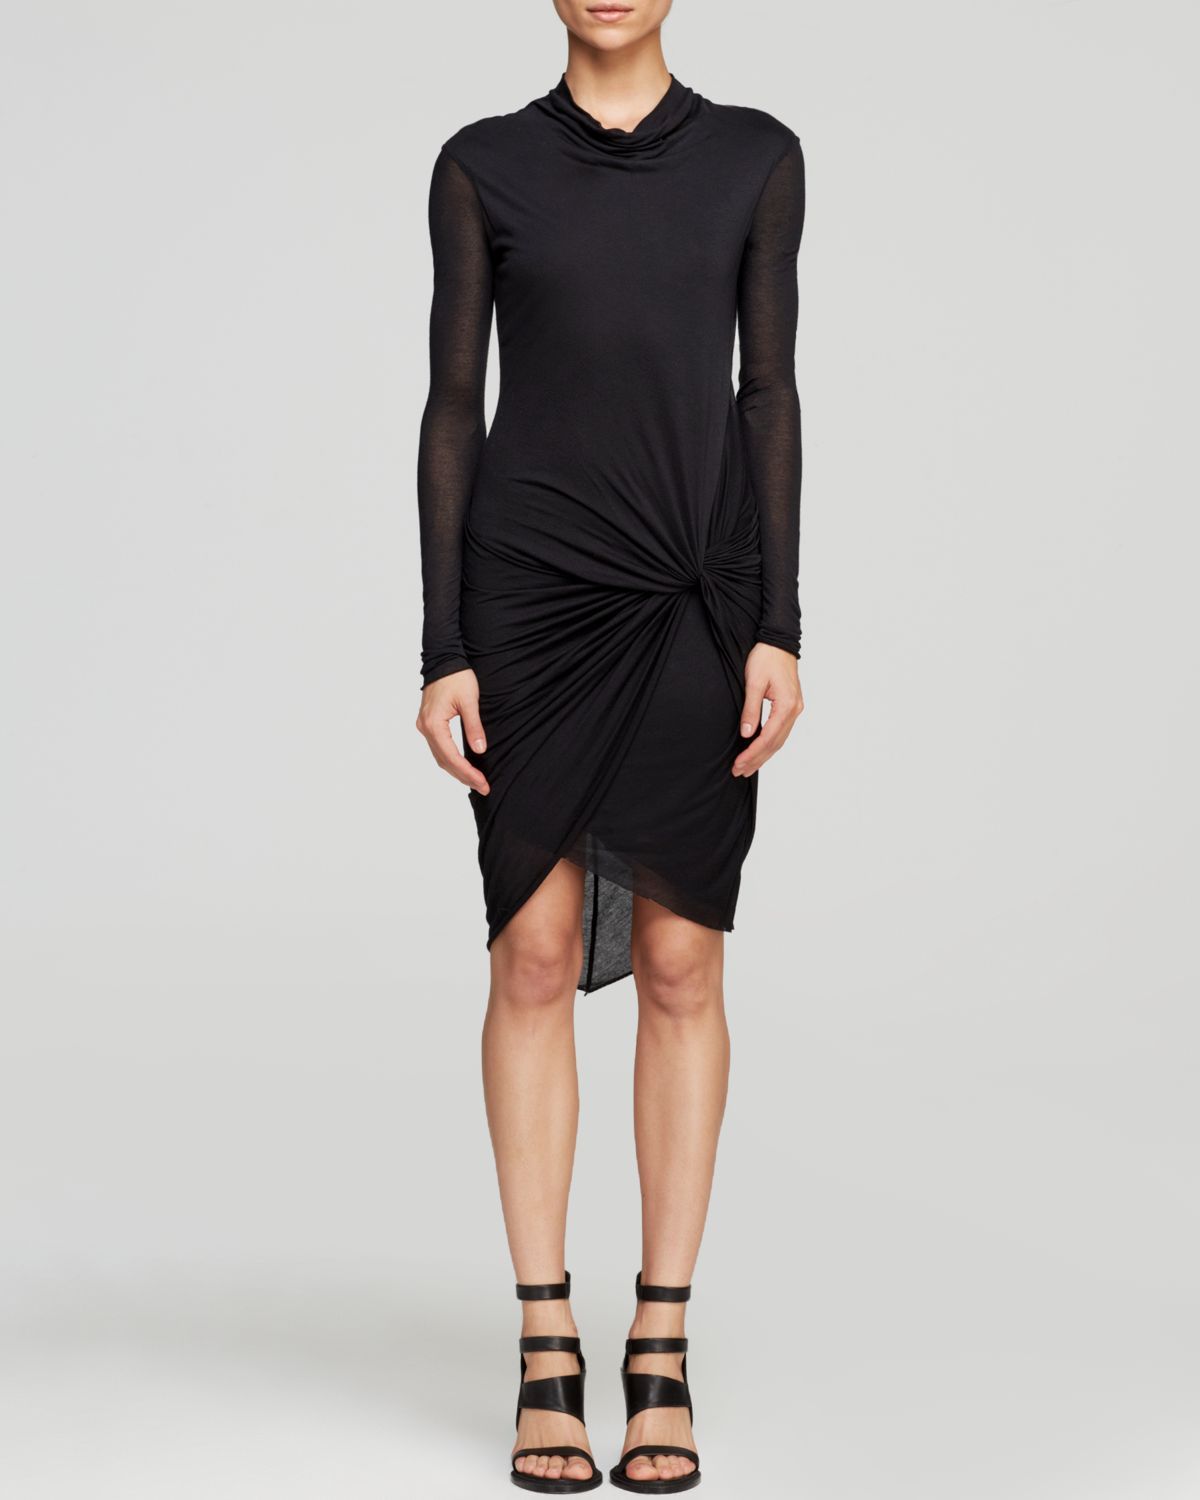 Helmut Lang Dress - Slack Jersey Twist Drape in Black | Lyst